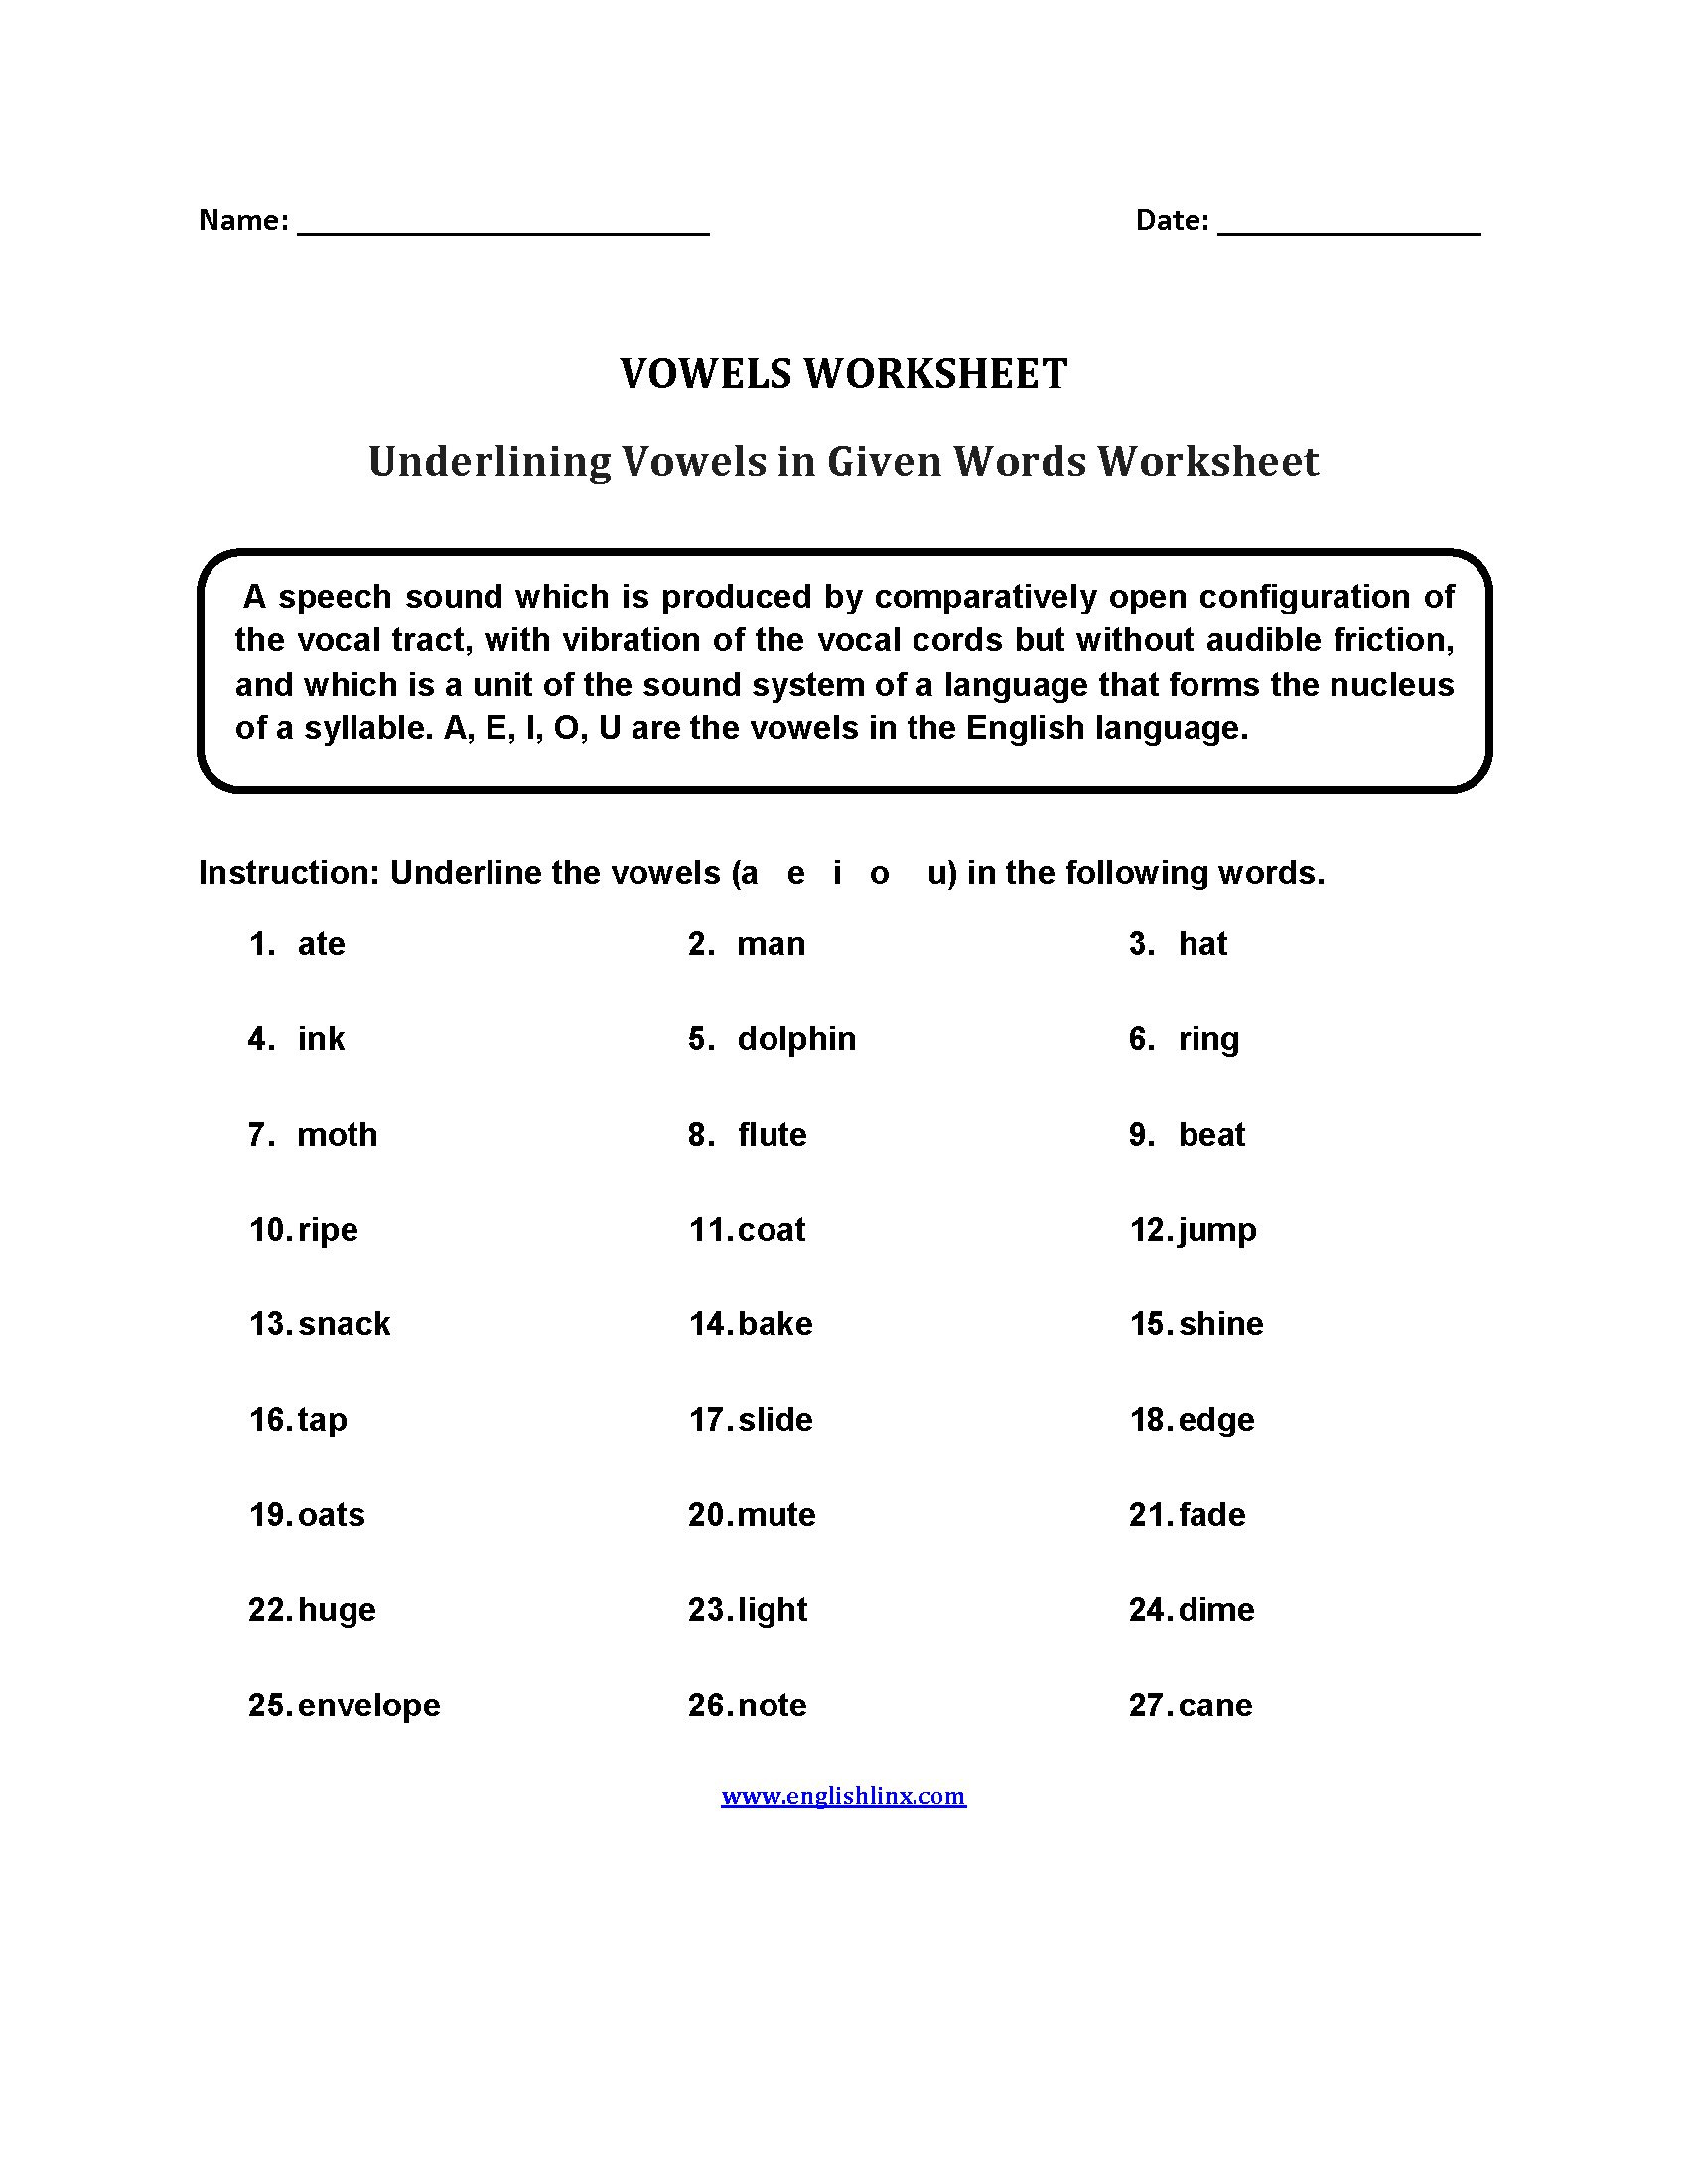 Underlining Vowels in Given Worksheets